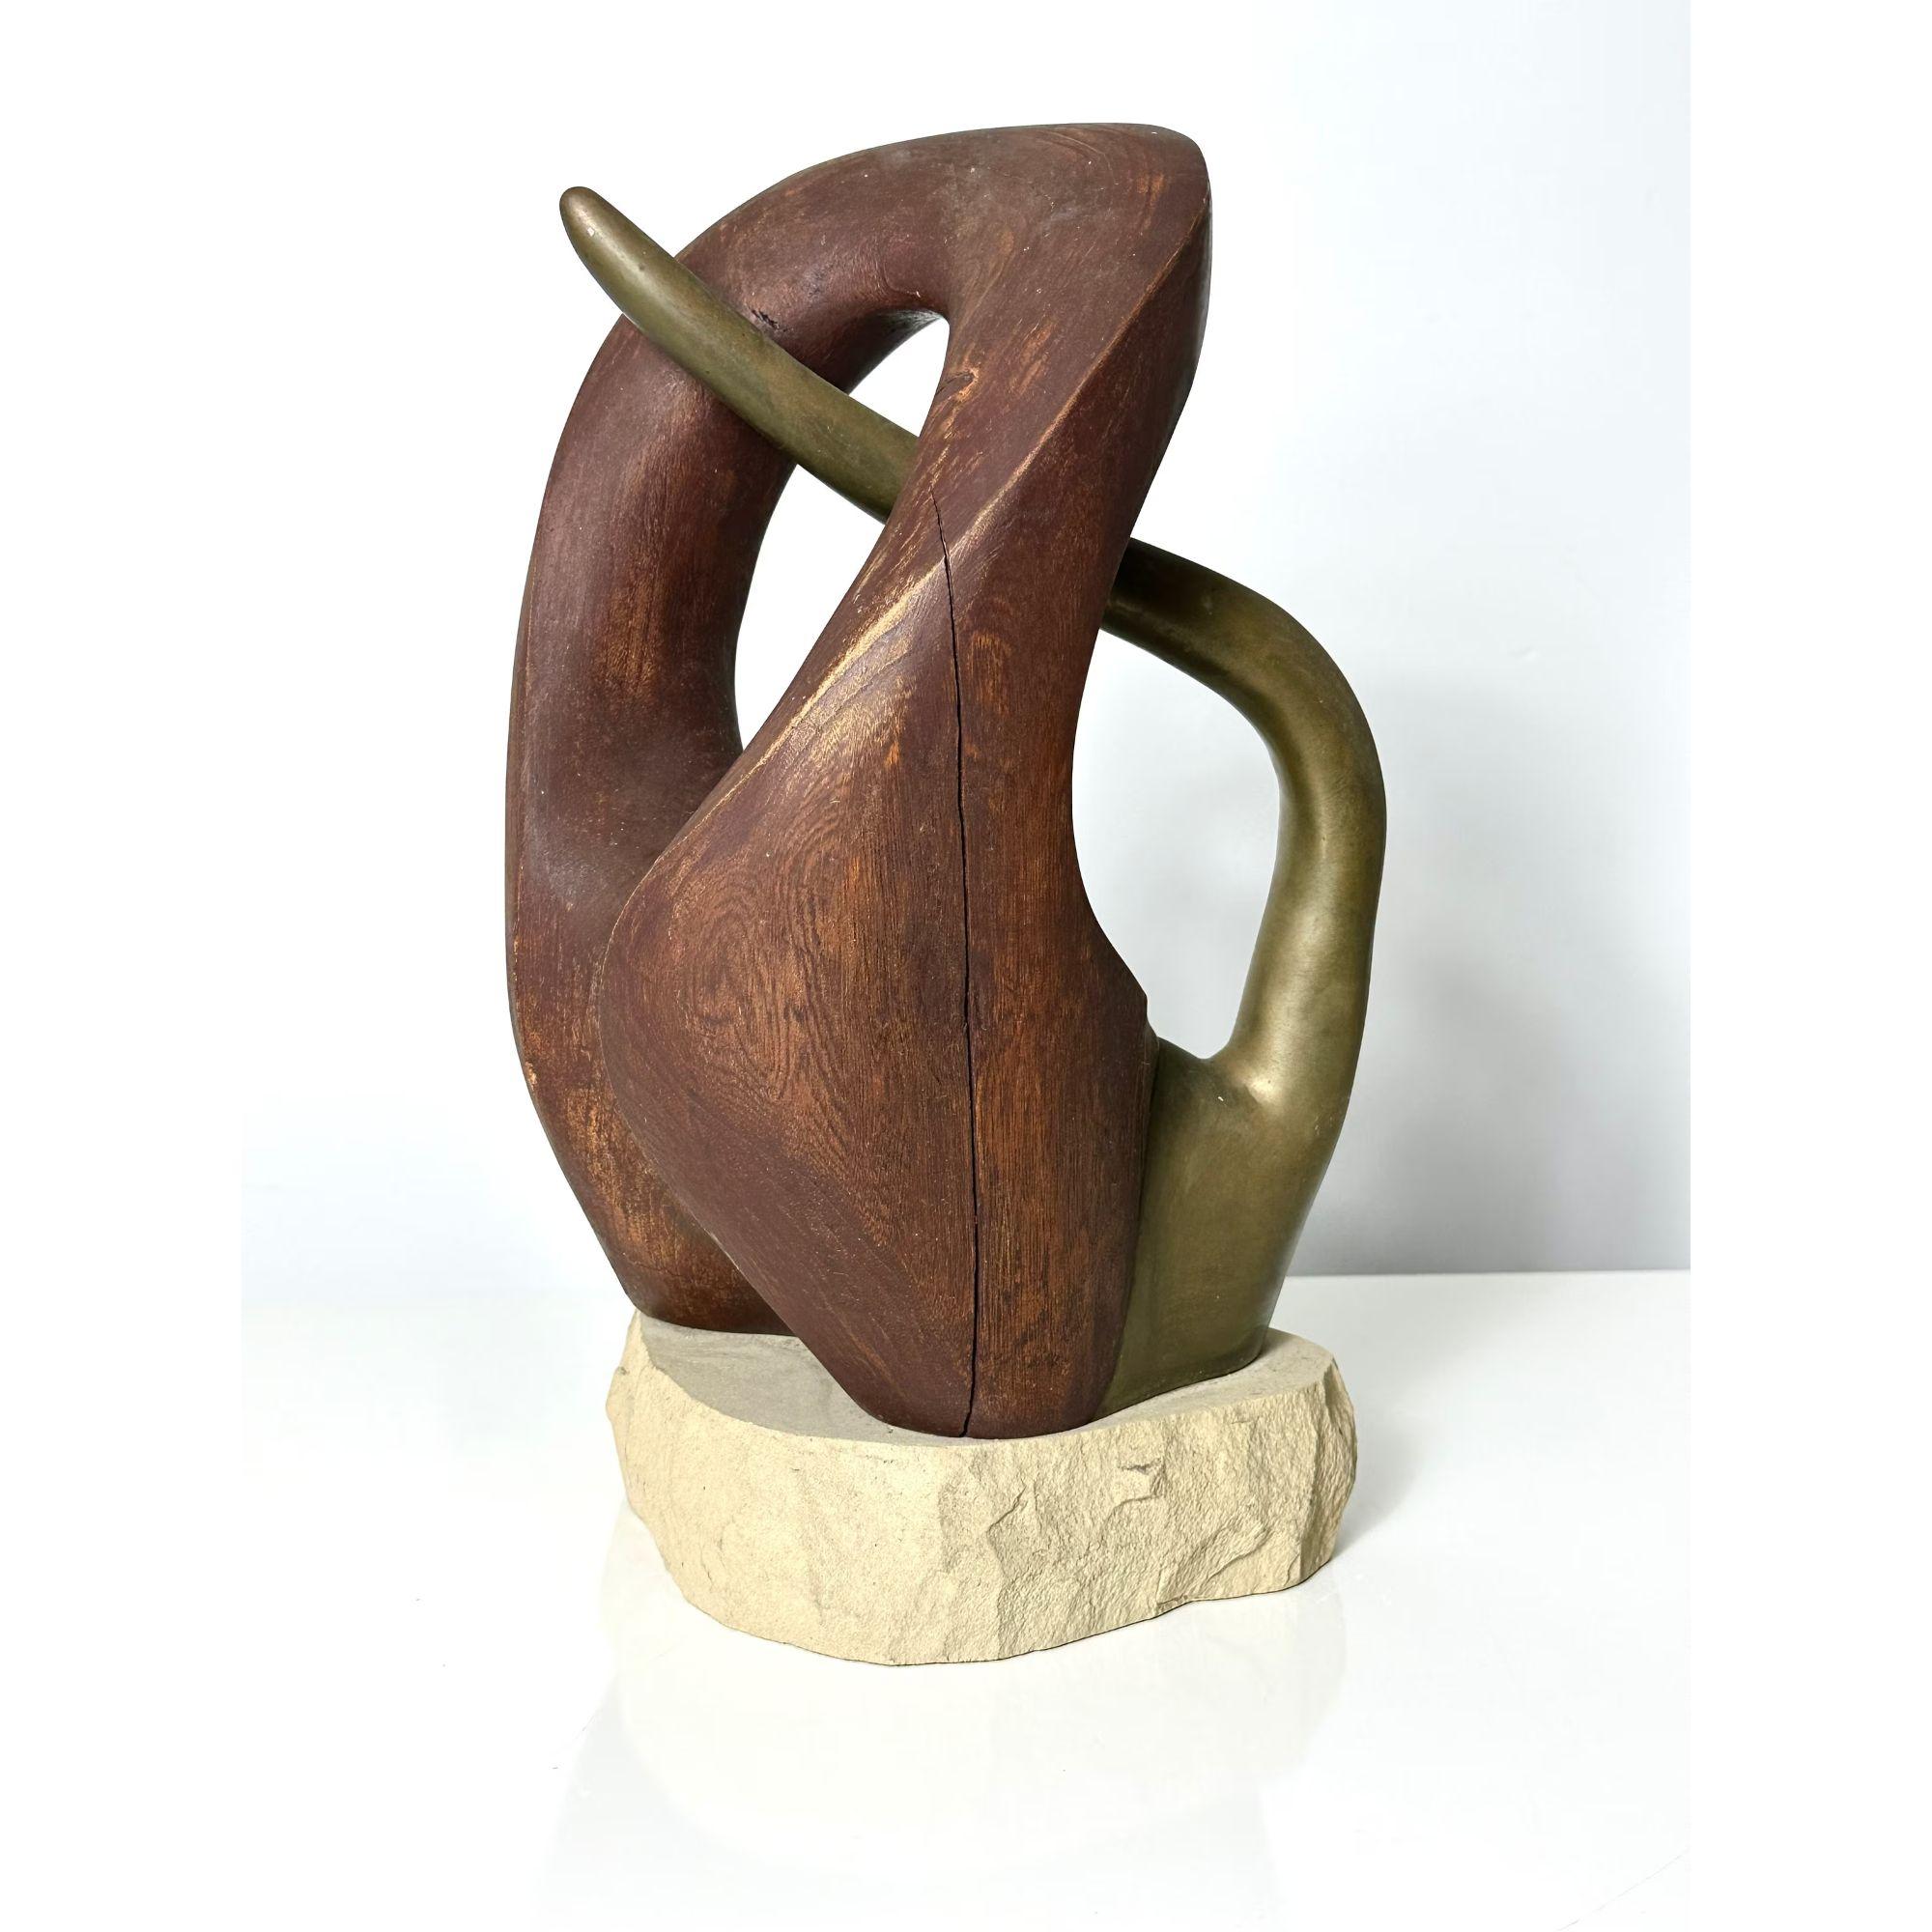 Orignal Vintage Mid Century Modern Abstrakt Biomorphic Holz & Bronze Skulptur von Fred Scott 

Einzigartige Skulptur des Künstlers Fred Scott aus Ohio, ca. 1960er Jahre
Geschnitztes Holz mit sich überschneidender Bronze auf einem gemeißelten